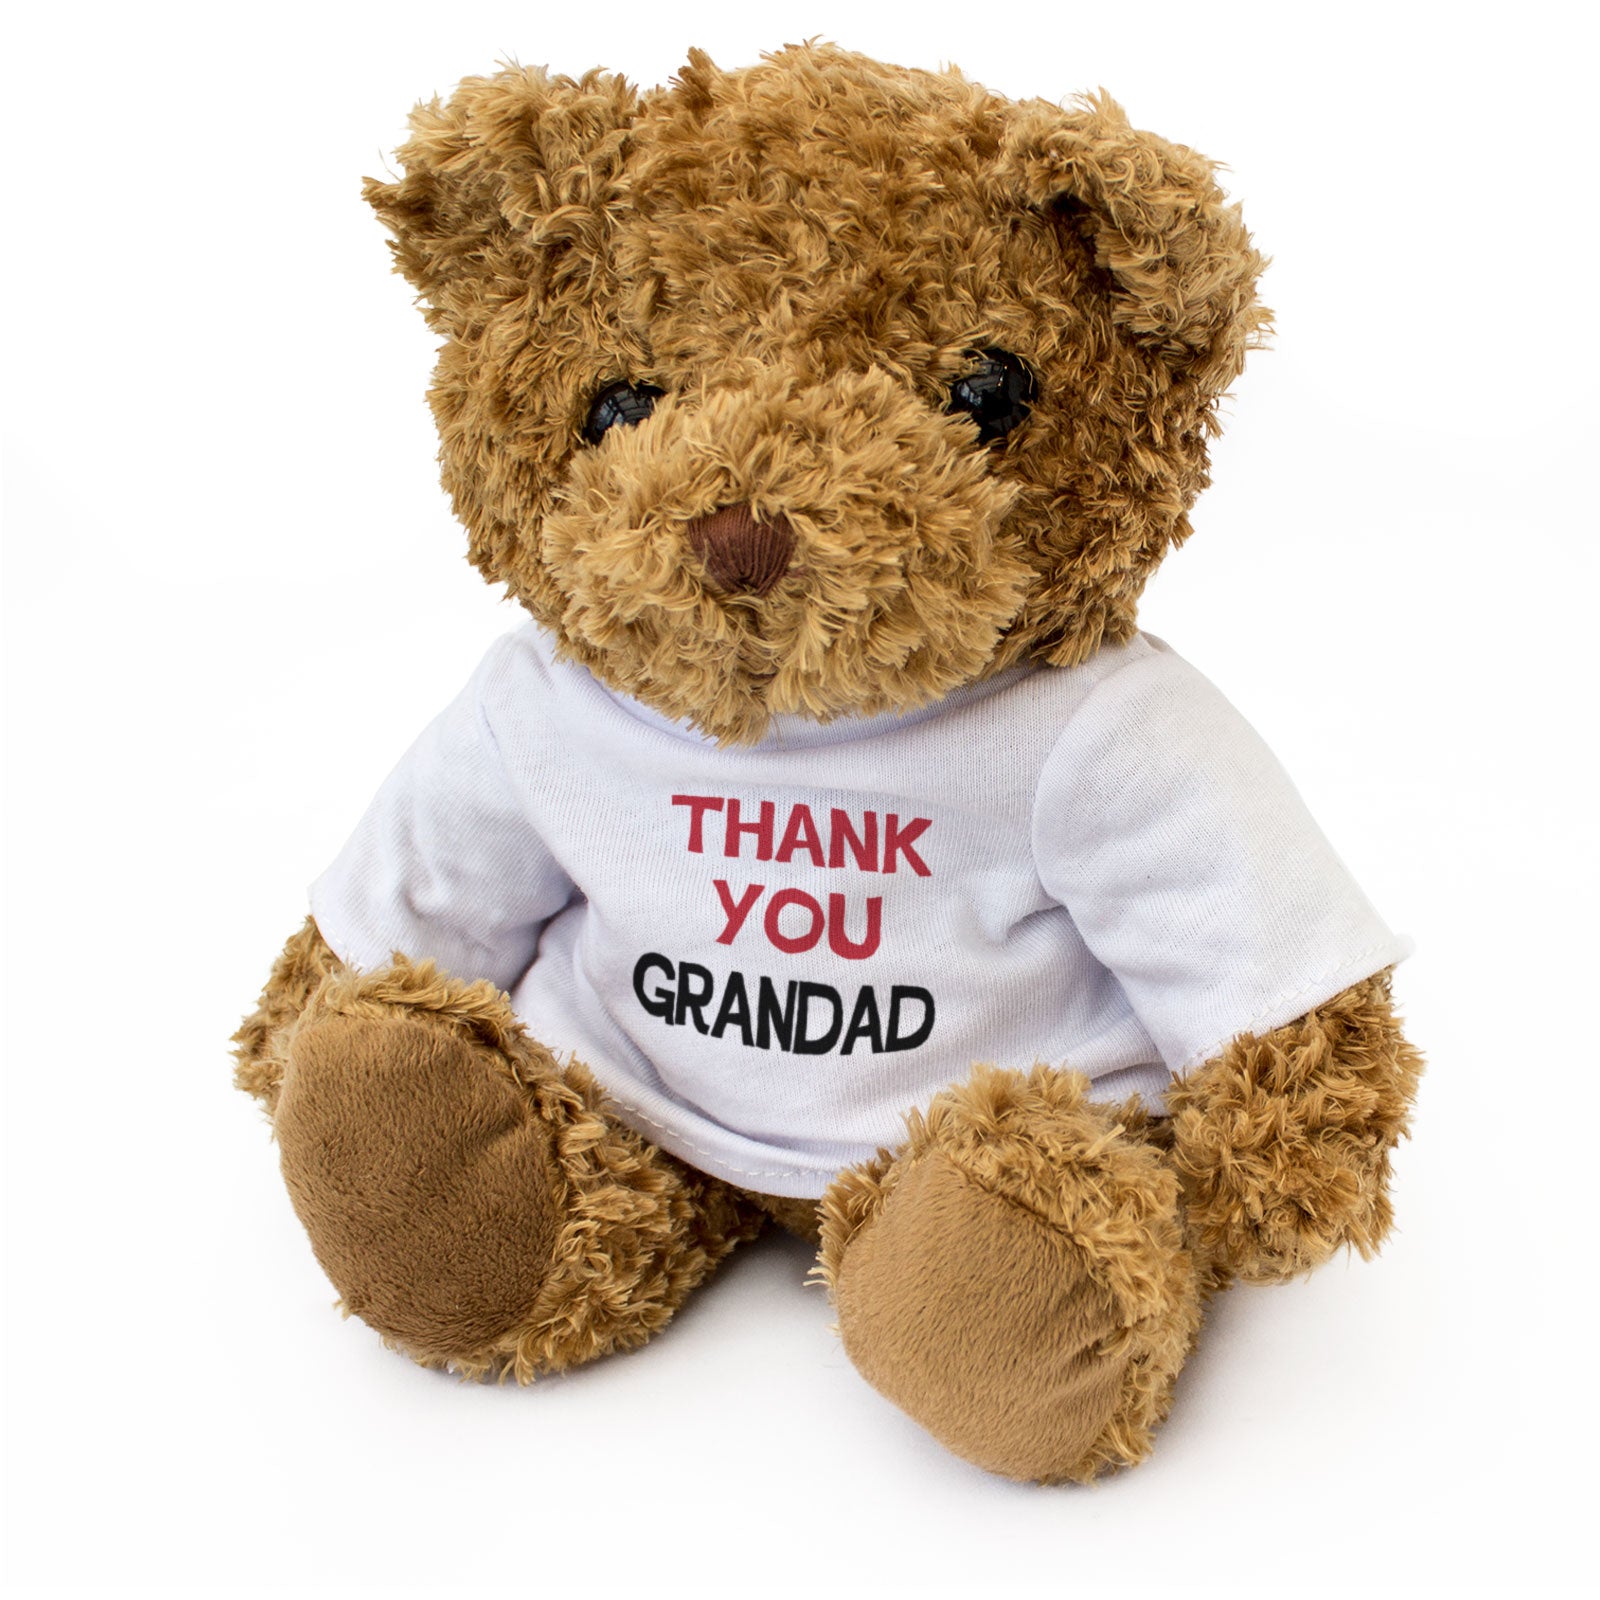 THANK YOU GRANDAD - Teddy Bear